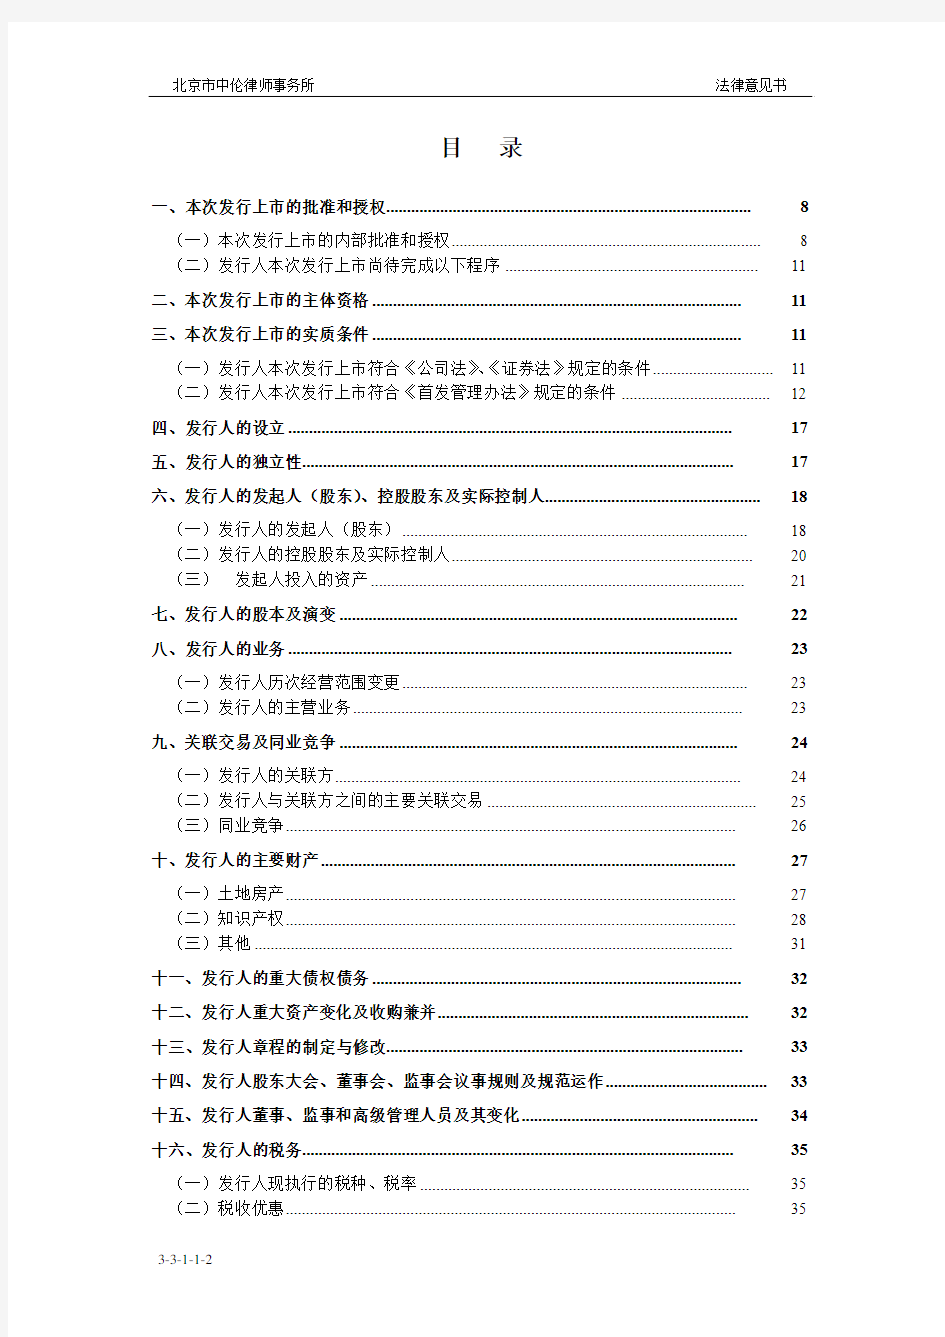 朗源股份：北京市中伦律师事务所关于公司首次公开发行股票并在创业板上市的法律意见书 2011-01-19